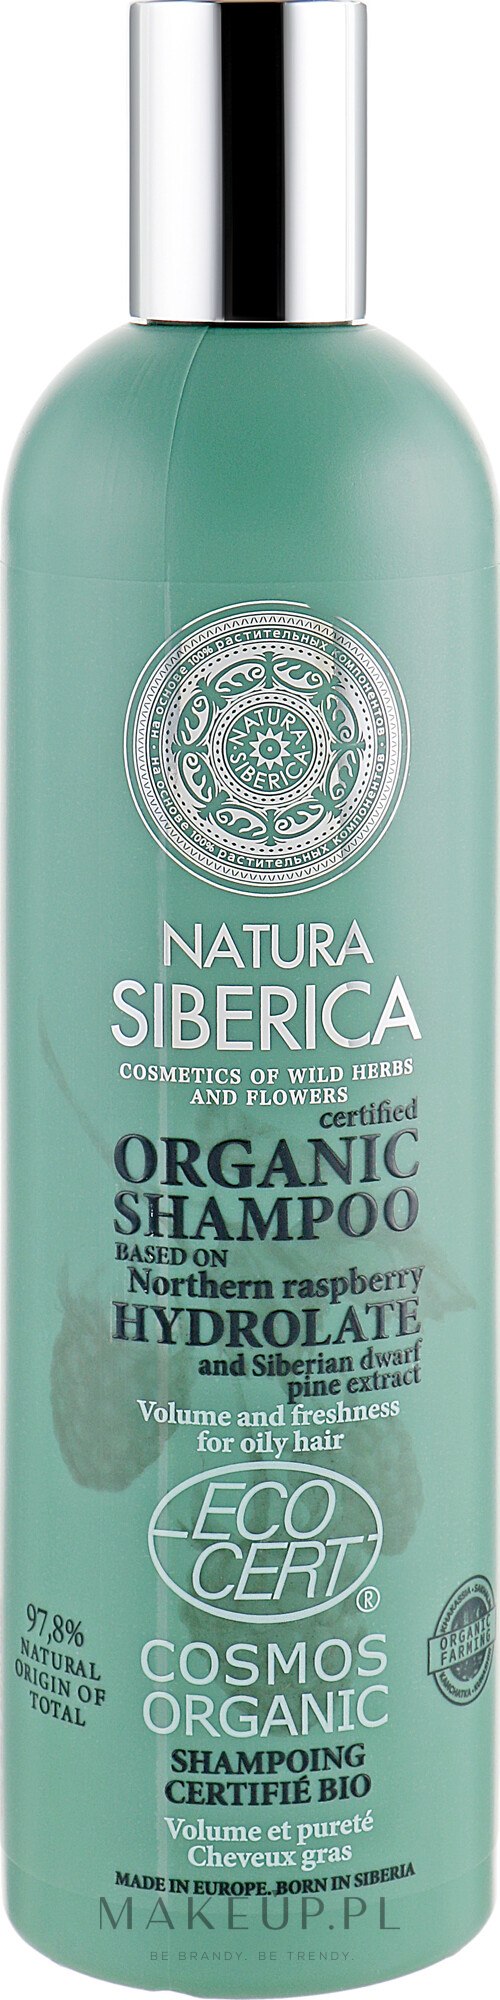 natura siberica szampon opis